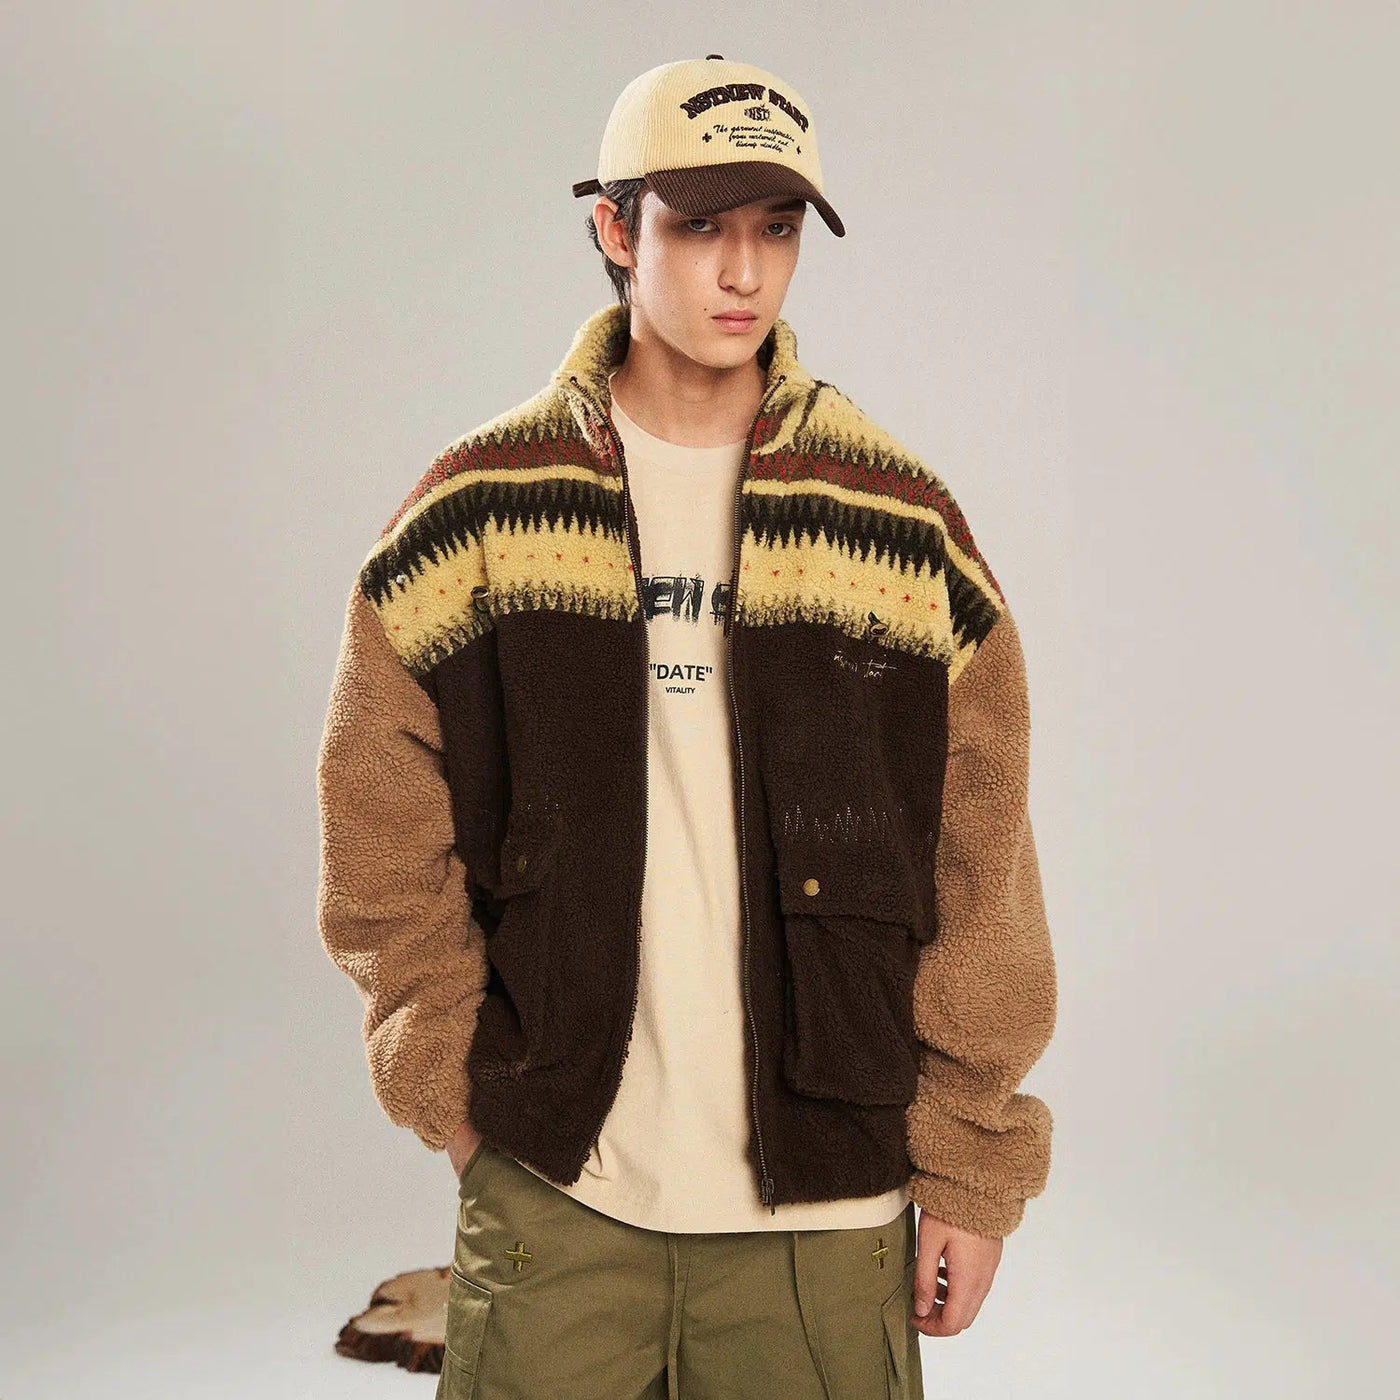 Vintage Patterned Sherpa Jacket Korean Street Fashion Jacket By New Start Shop Online at OH Vault